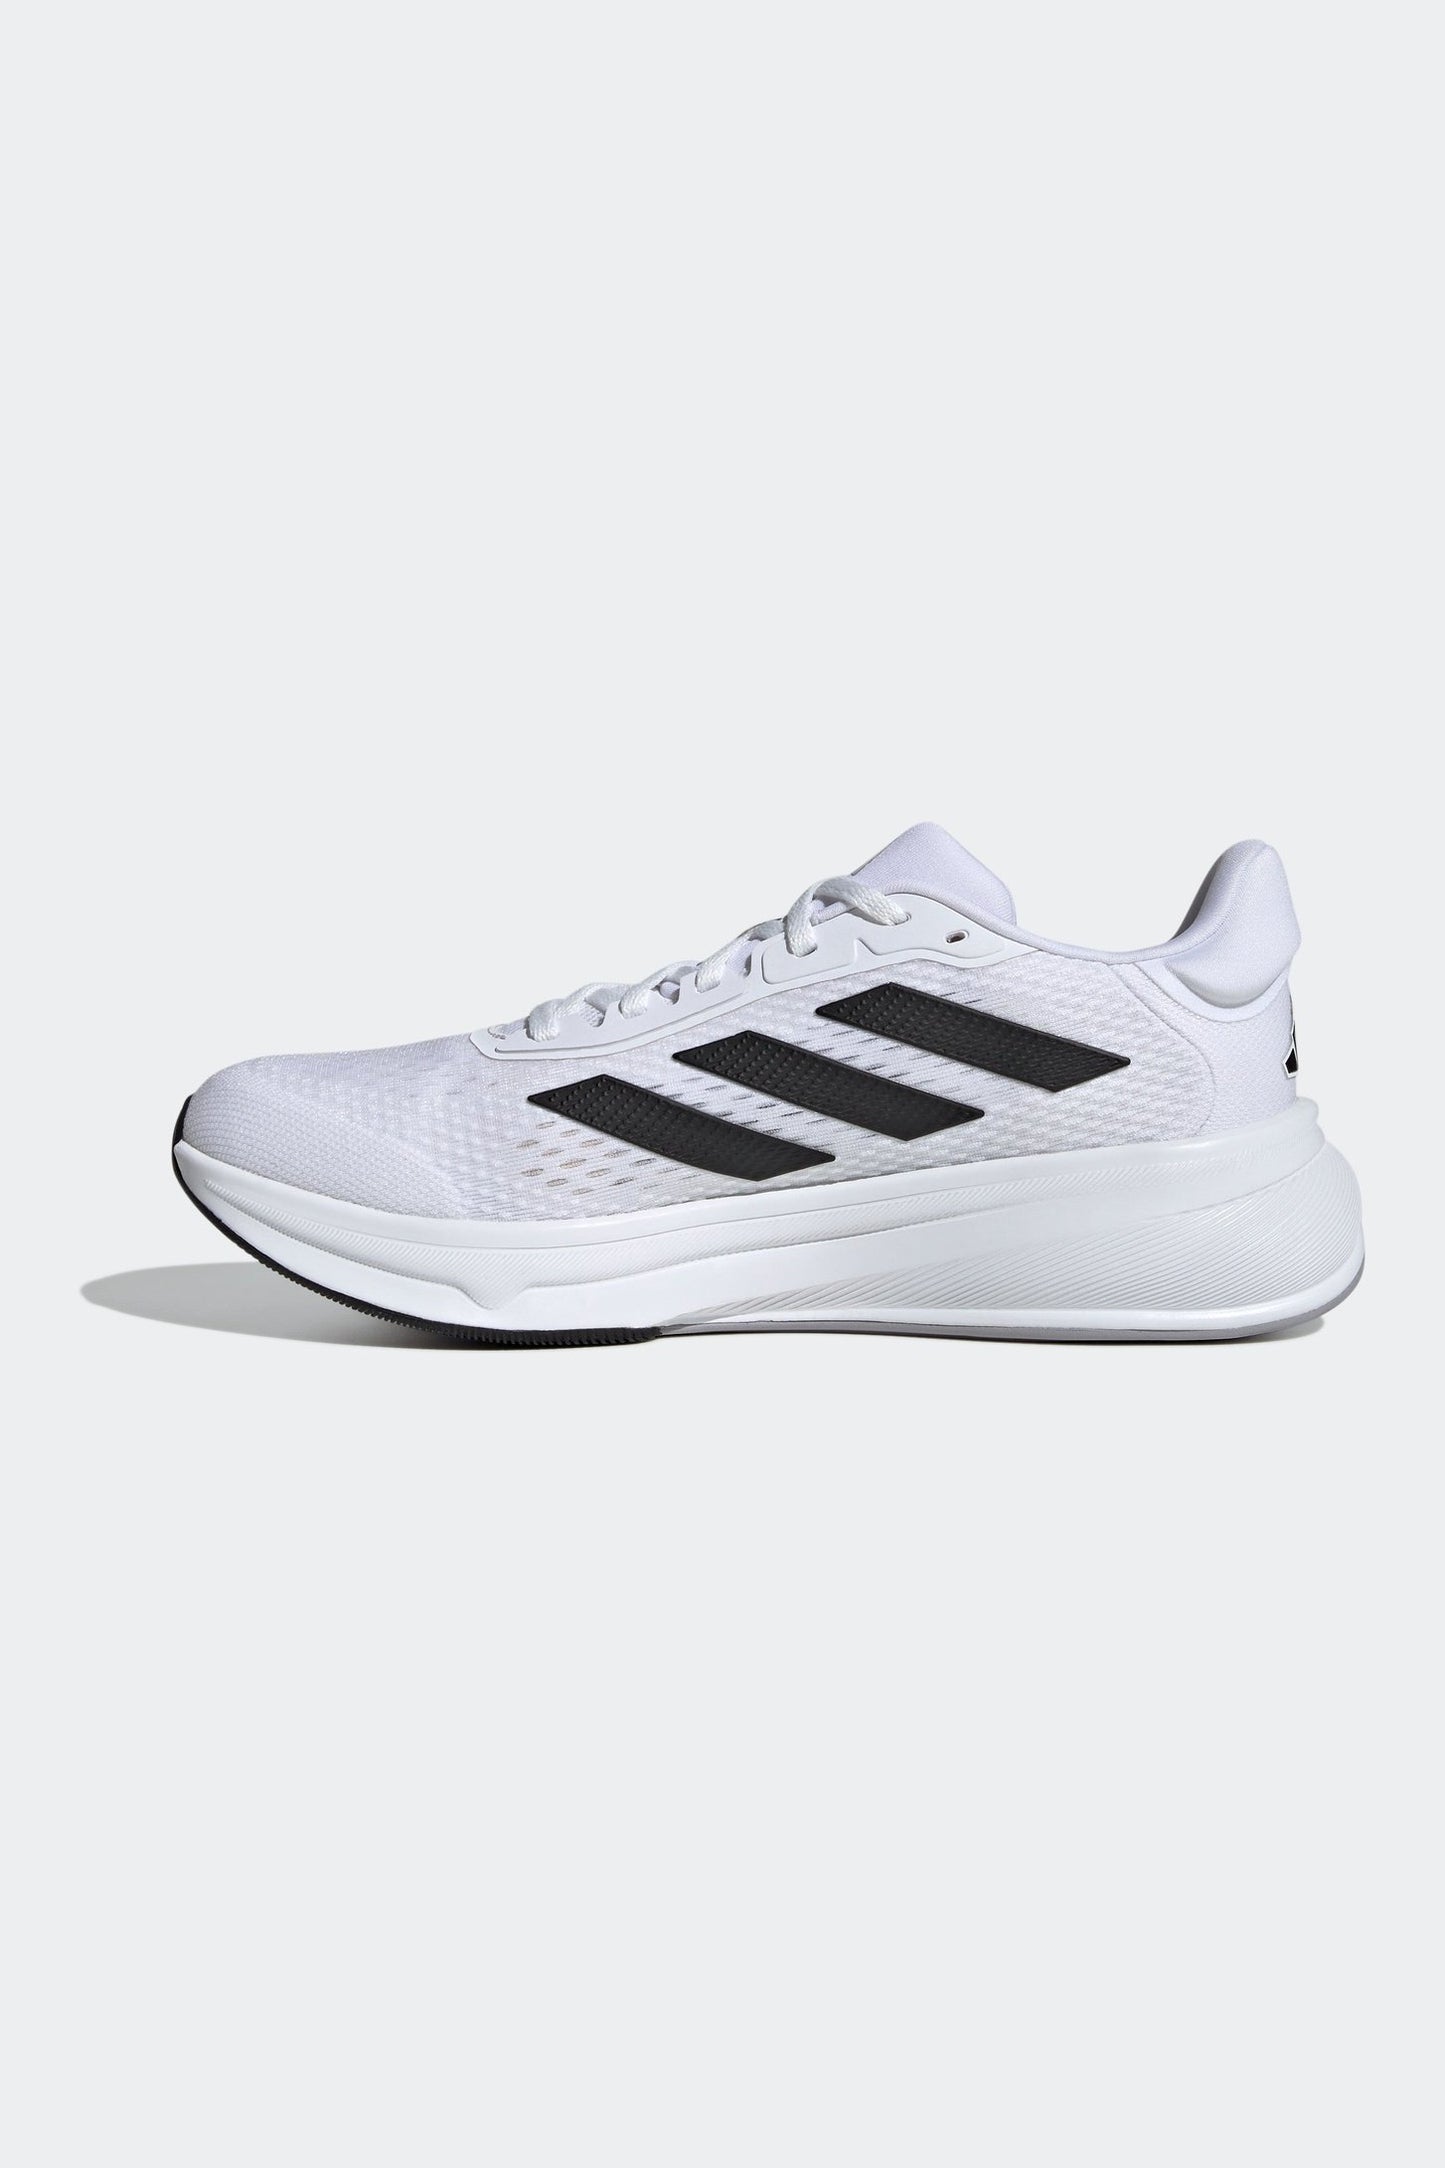 נעלי ספורט לגברים RESPONSE SUPER בצבע לבן ושחור